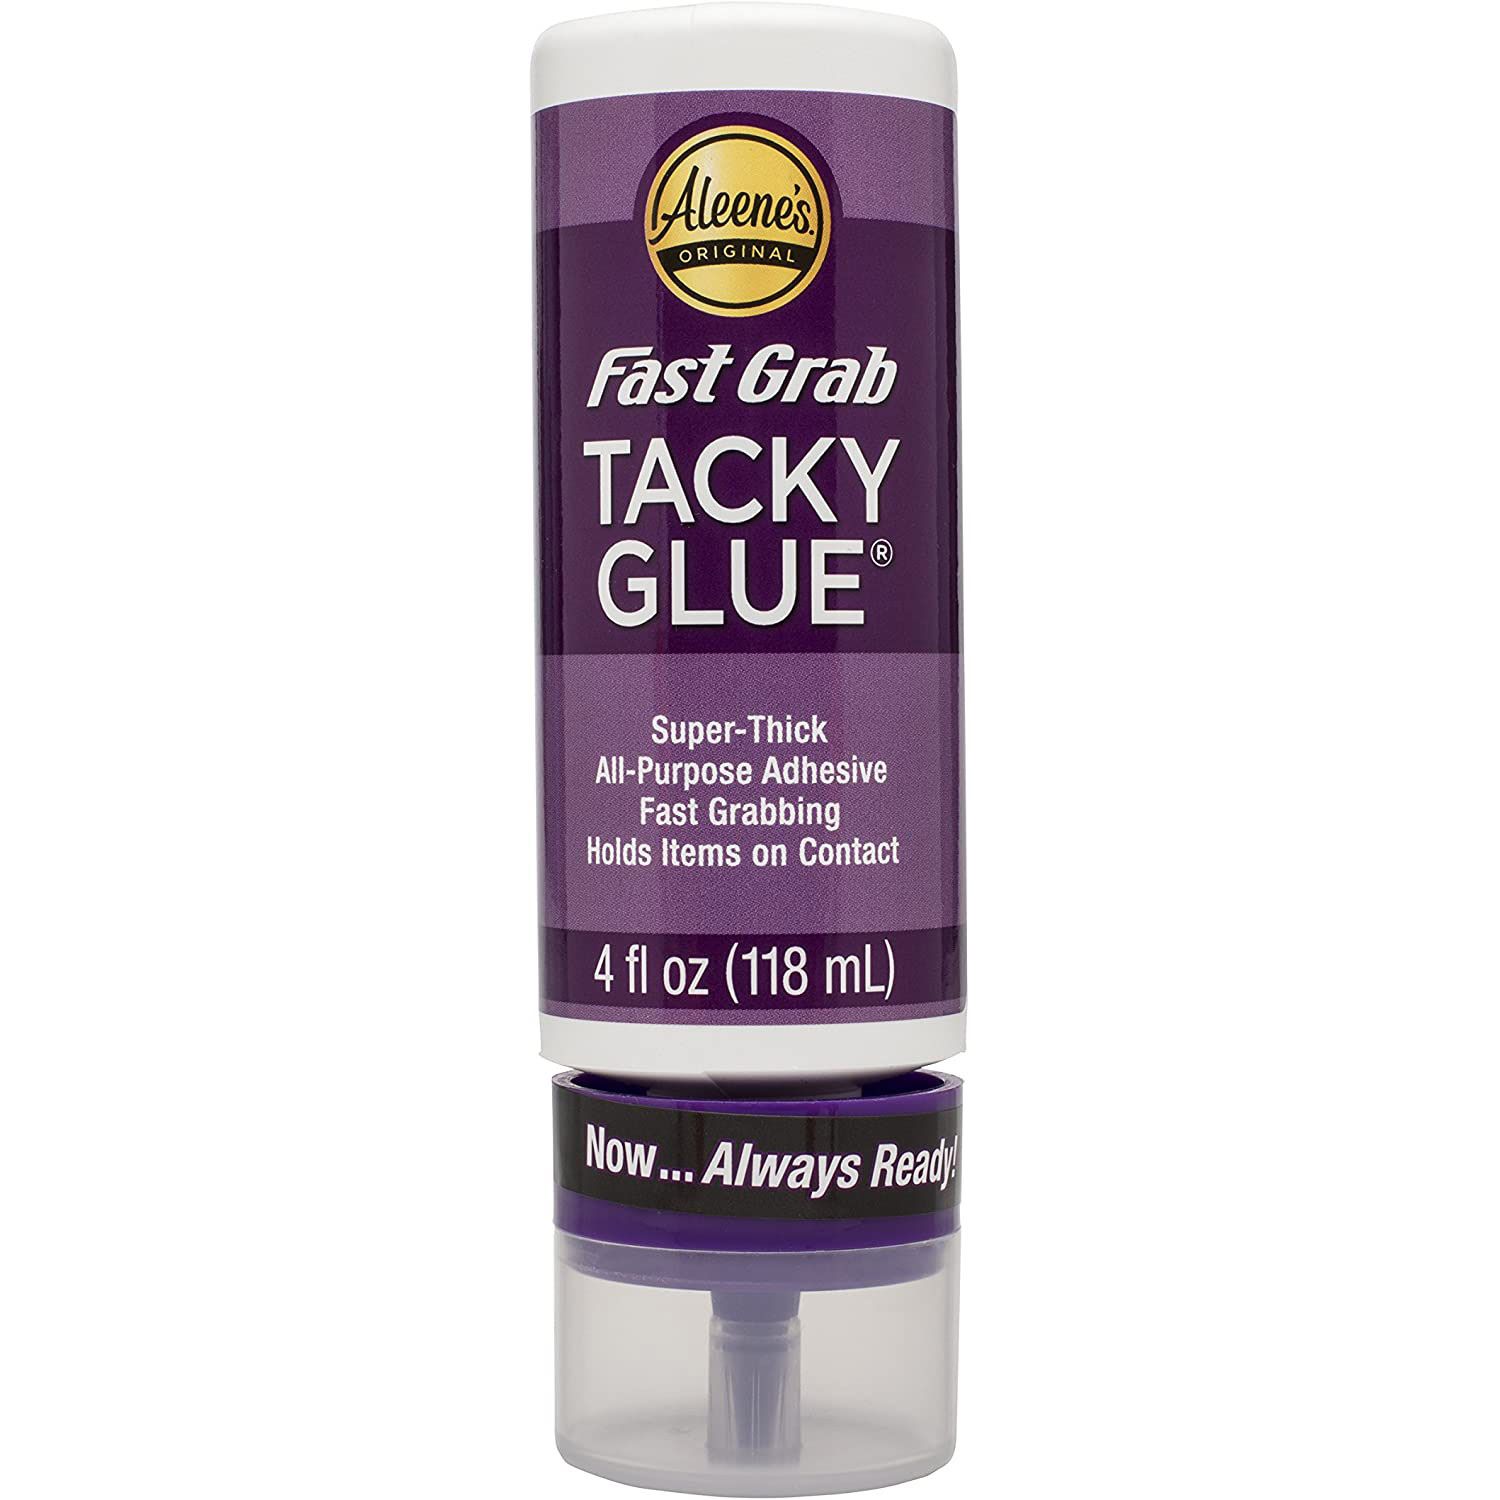 Aleene's • Fast grab tacky glue 118ml